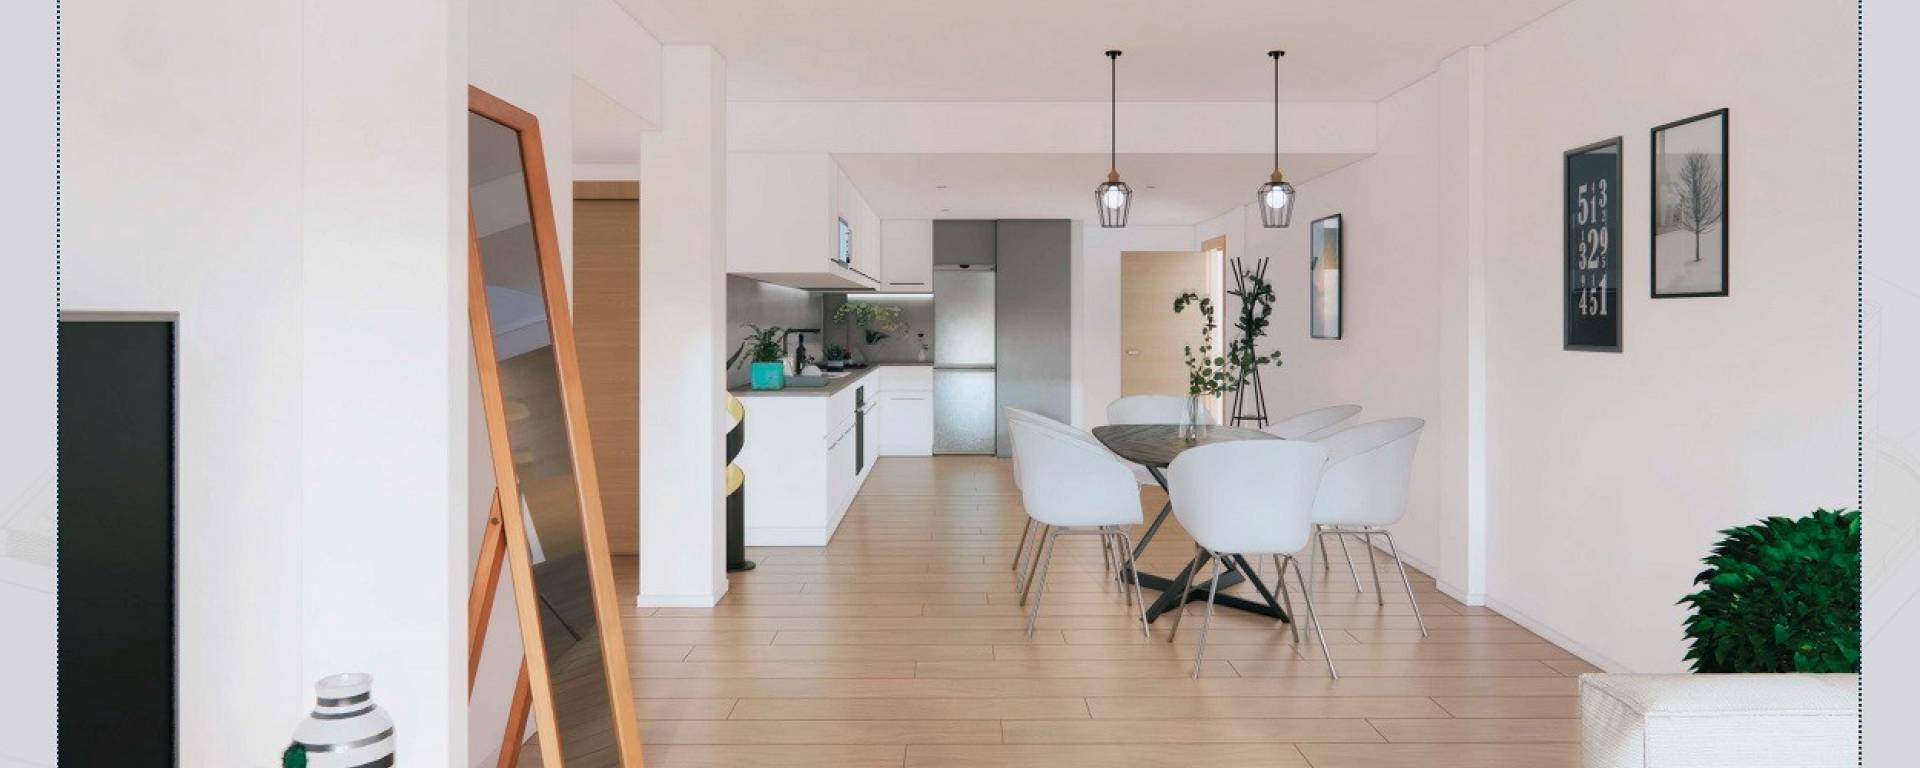 Appartement te koop in Costa Calida, Velapi´s Keuken type A